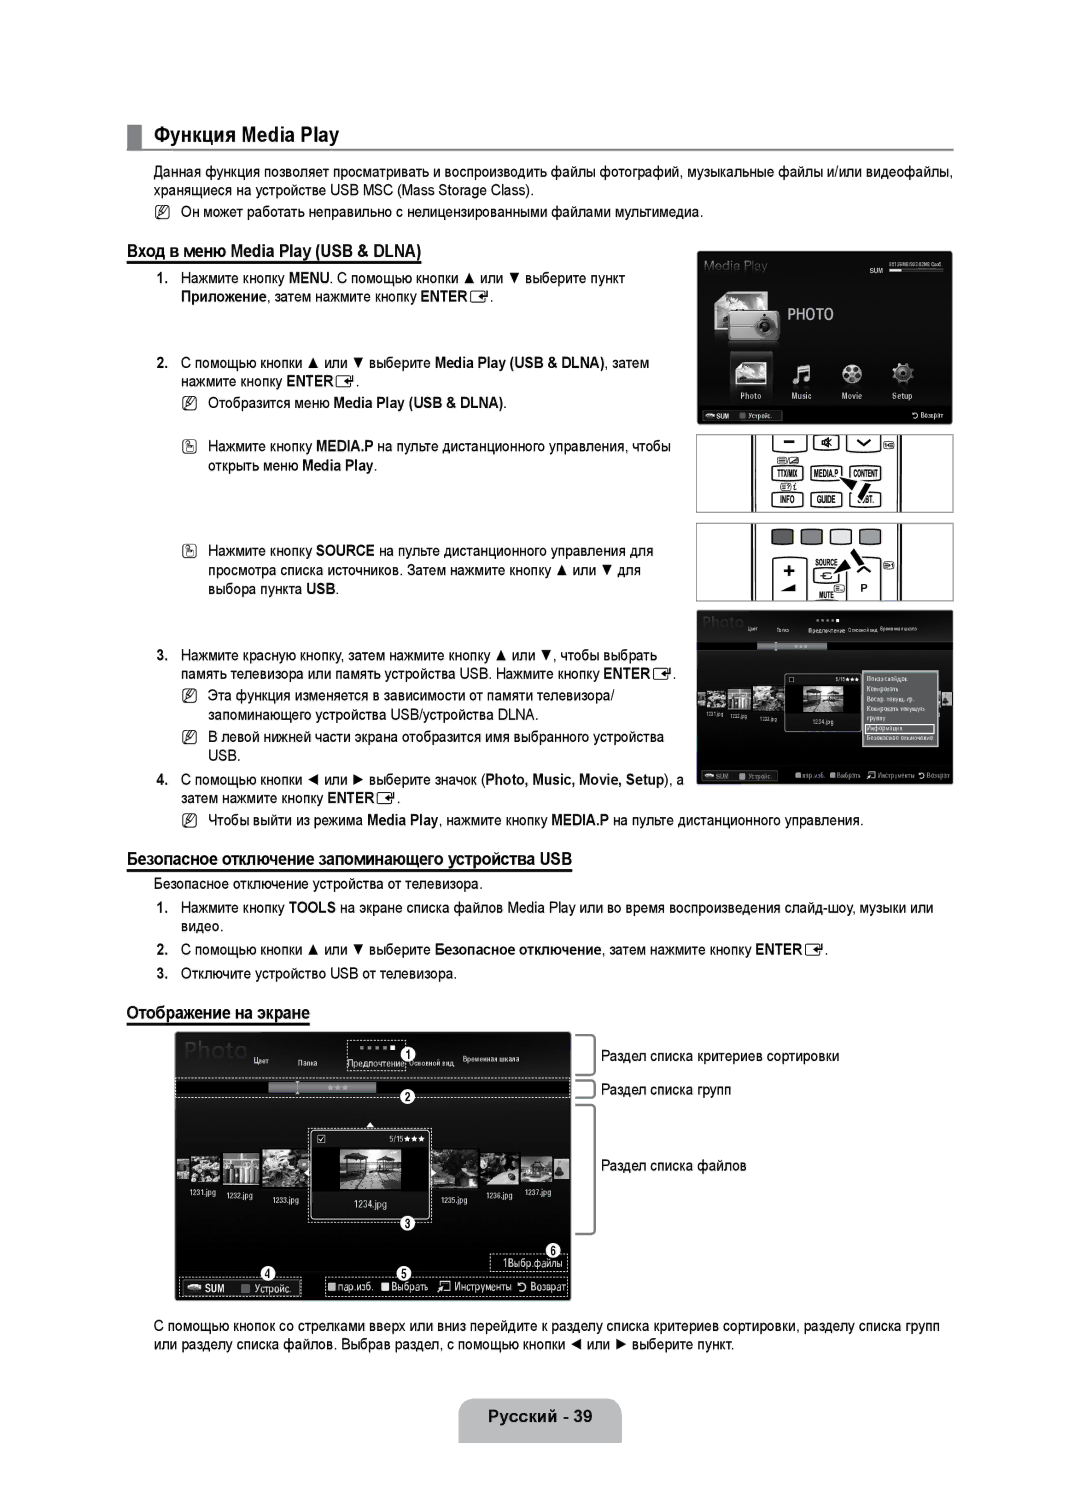 Samsung UE40B7020WWXUA, UE40B7000WWXUA manual Функция Media Play, Вход в меню Media Play USB & Dlna, Отображение на экране 